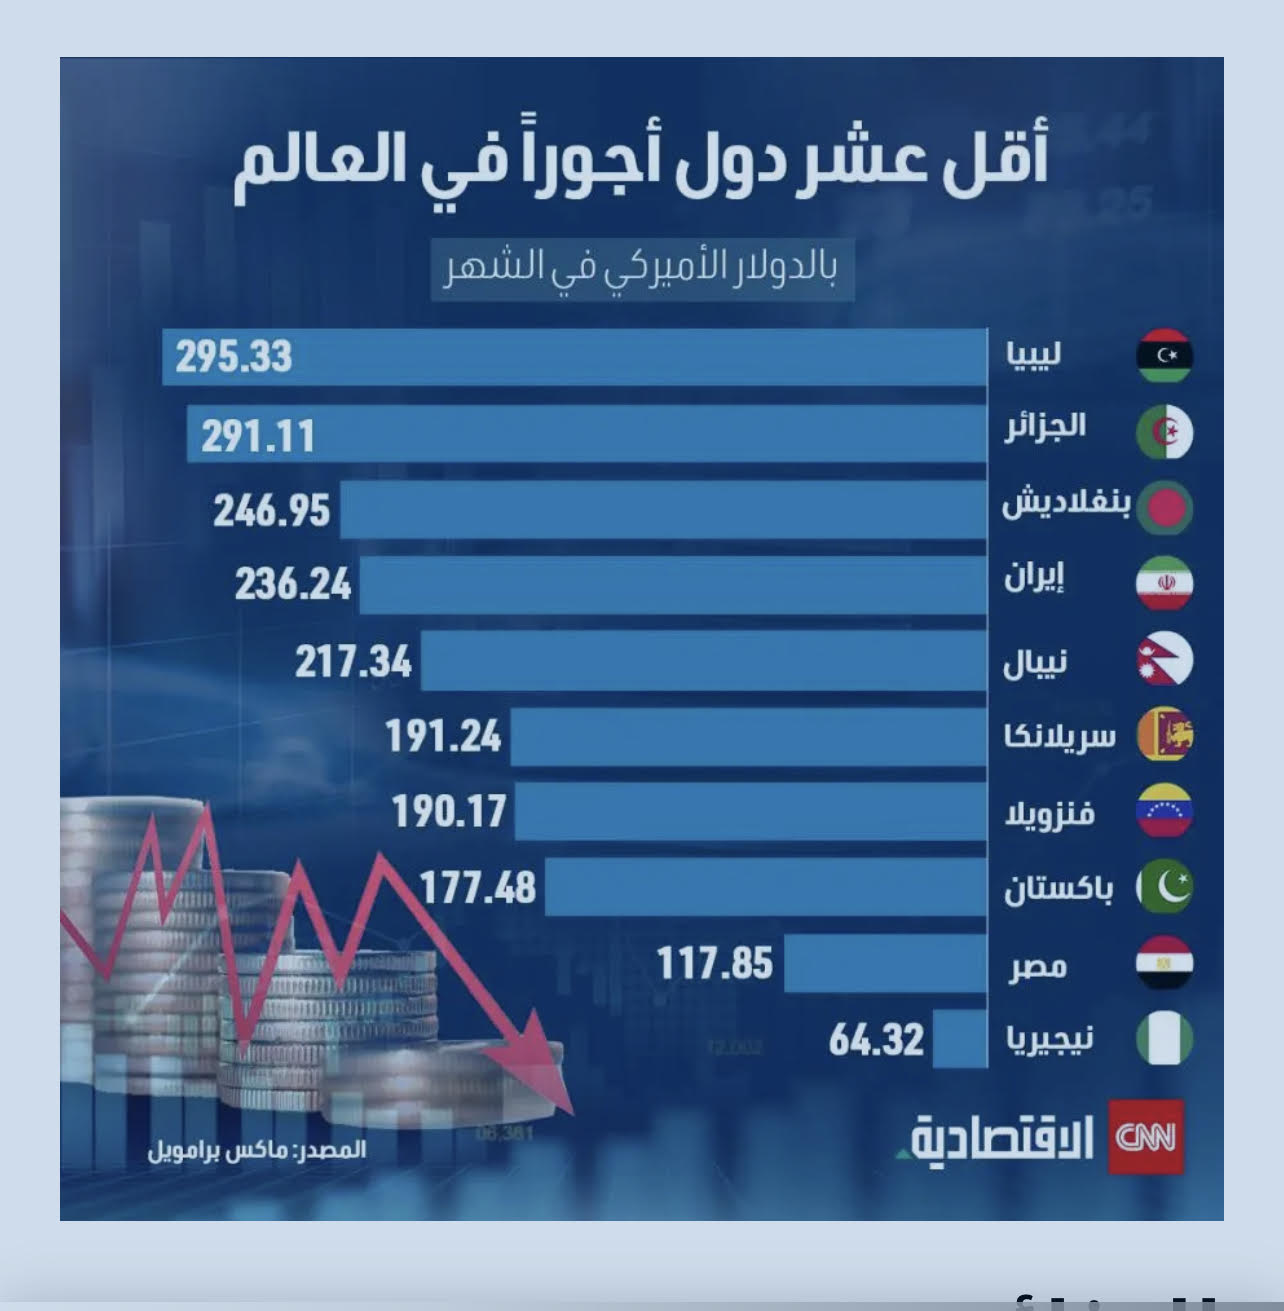  الإمارات وقطر ضمن الدول صاحبة أعلى رواتب